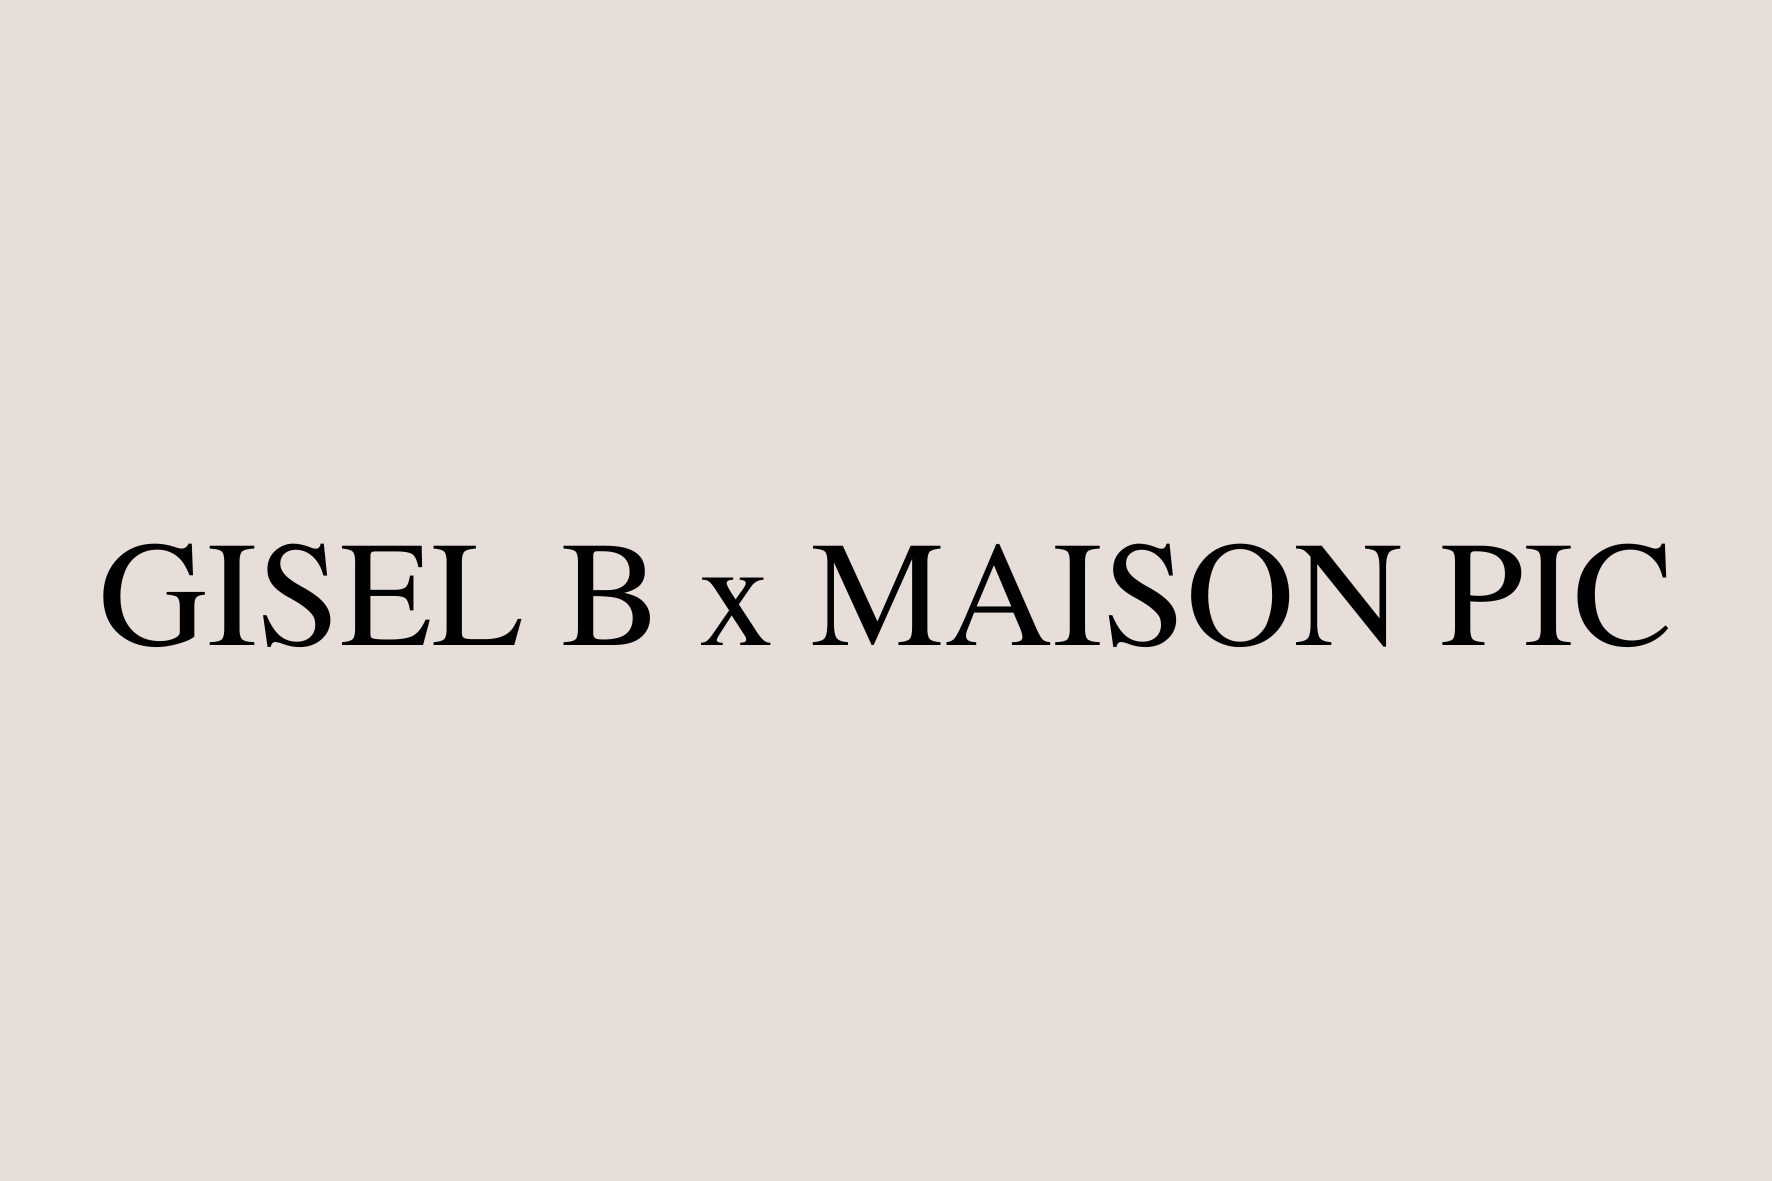 GISEL B x LA MAISON PIC